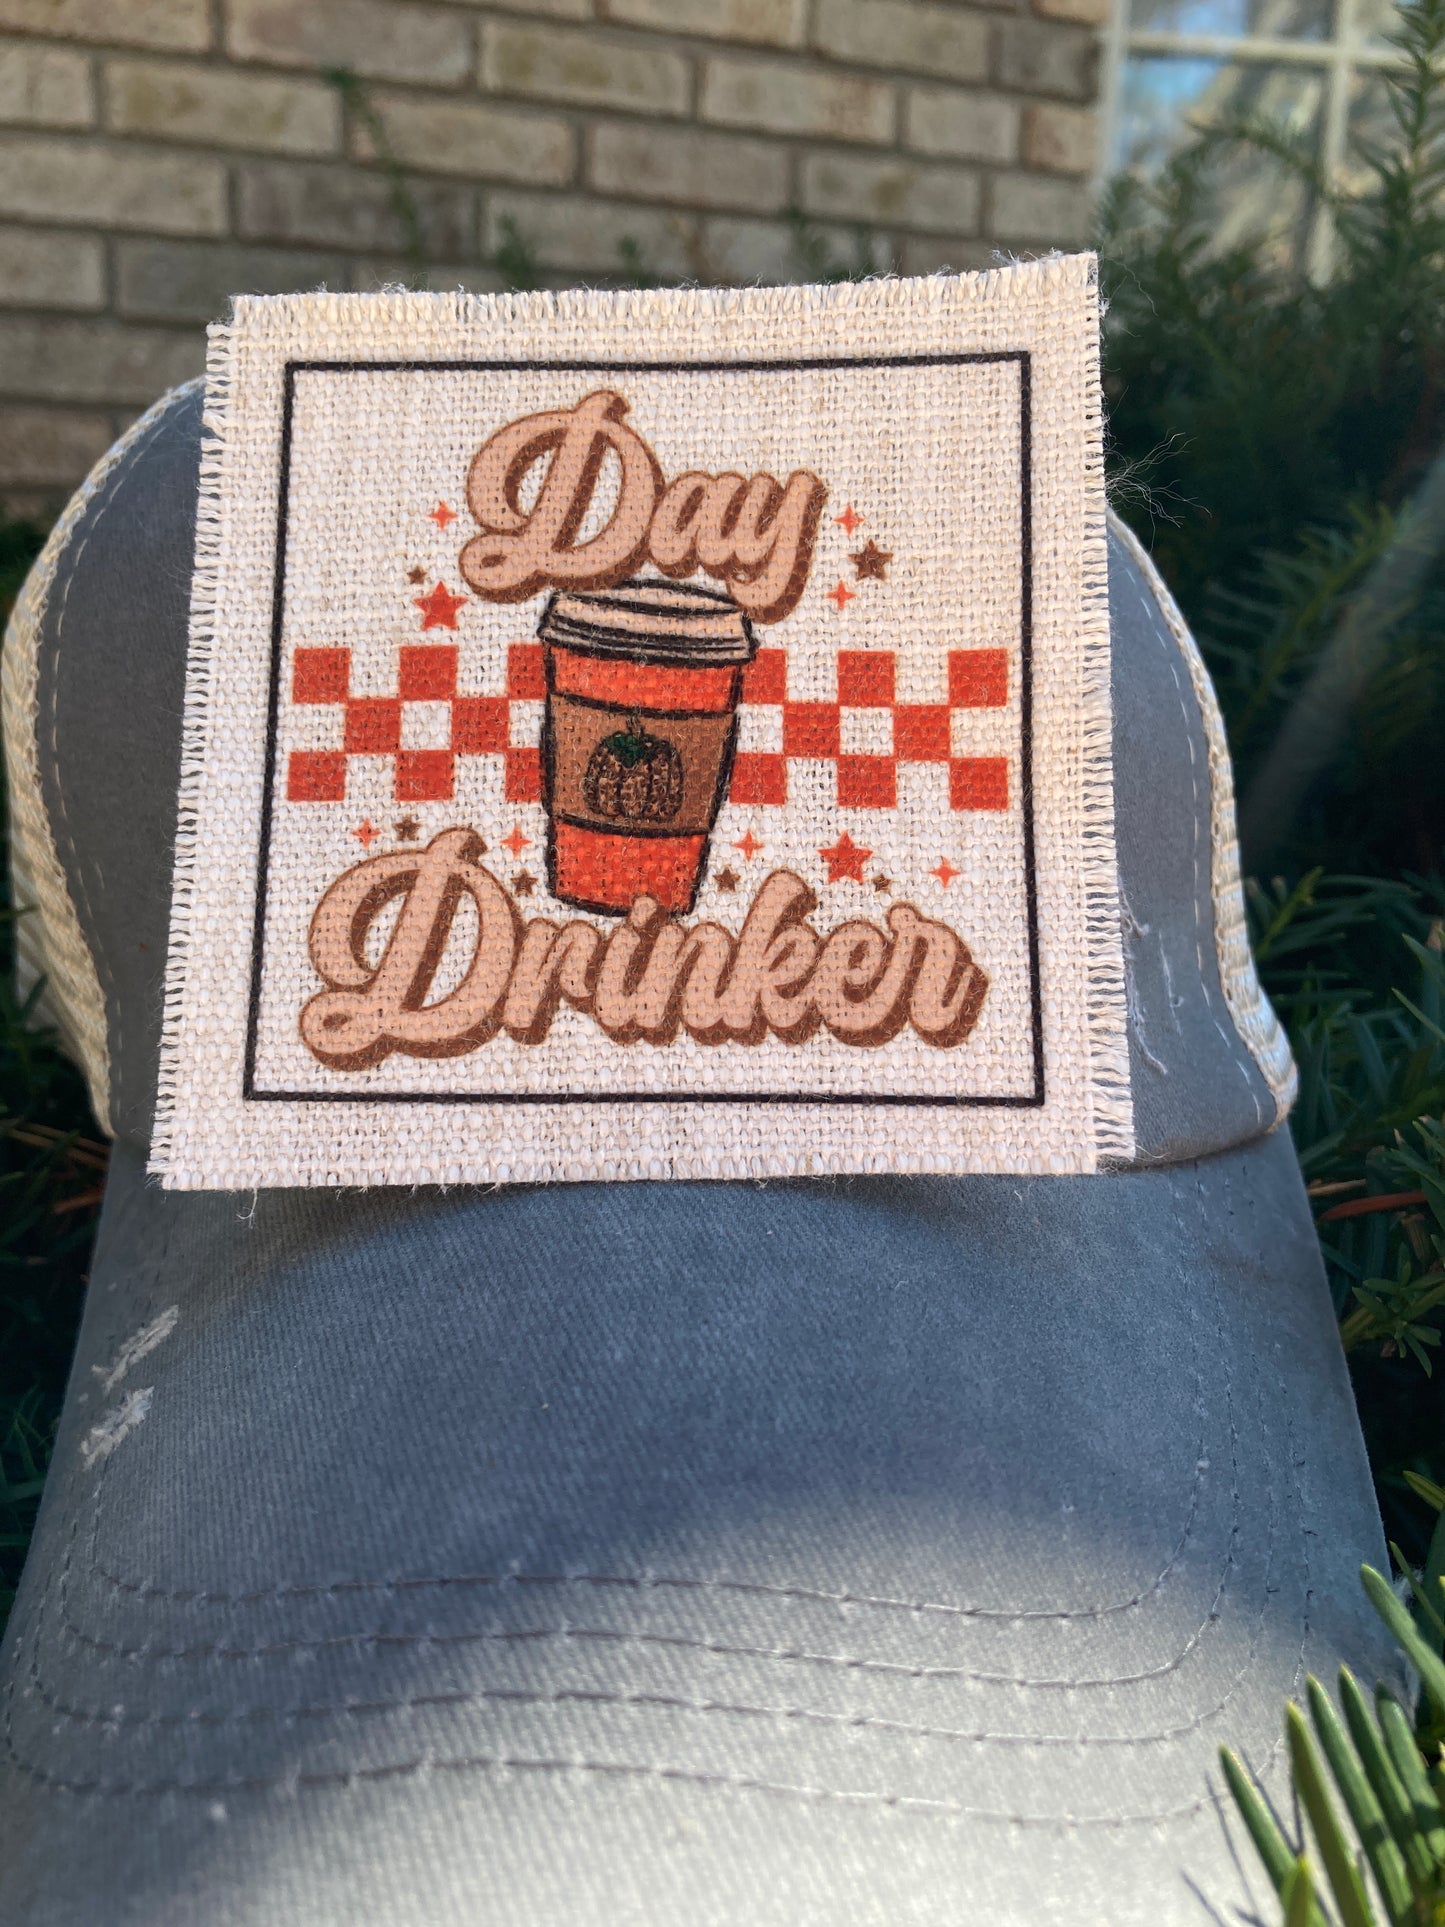 Day Drinker Pumpkin Latte Hat Patch